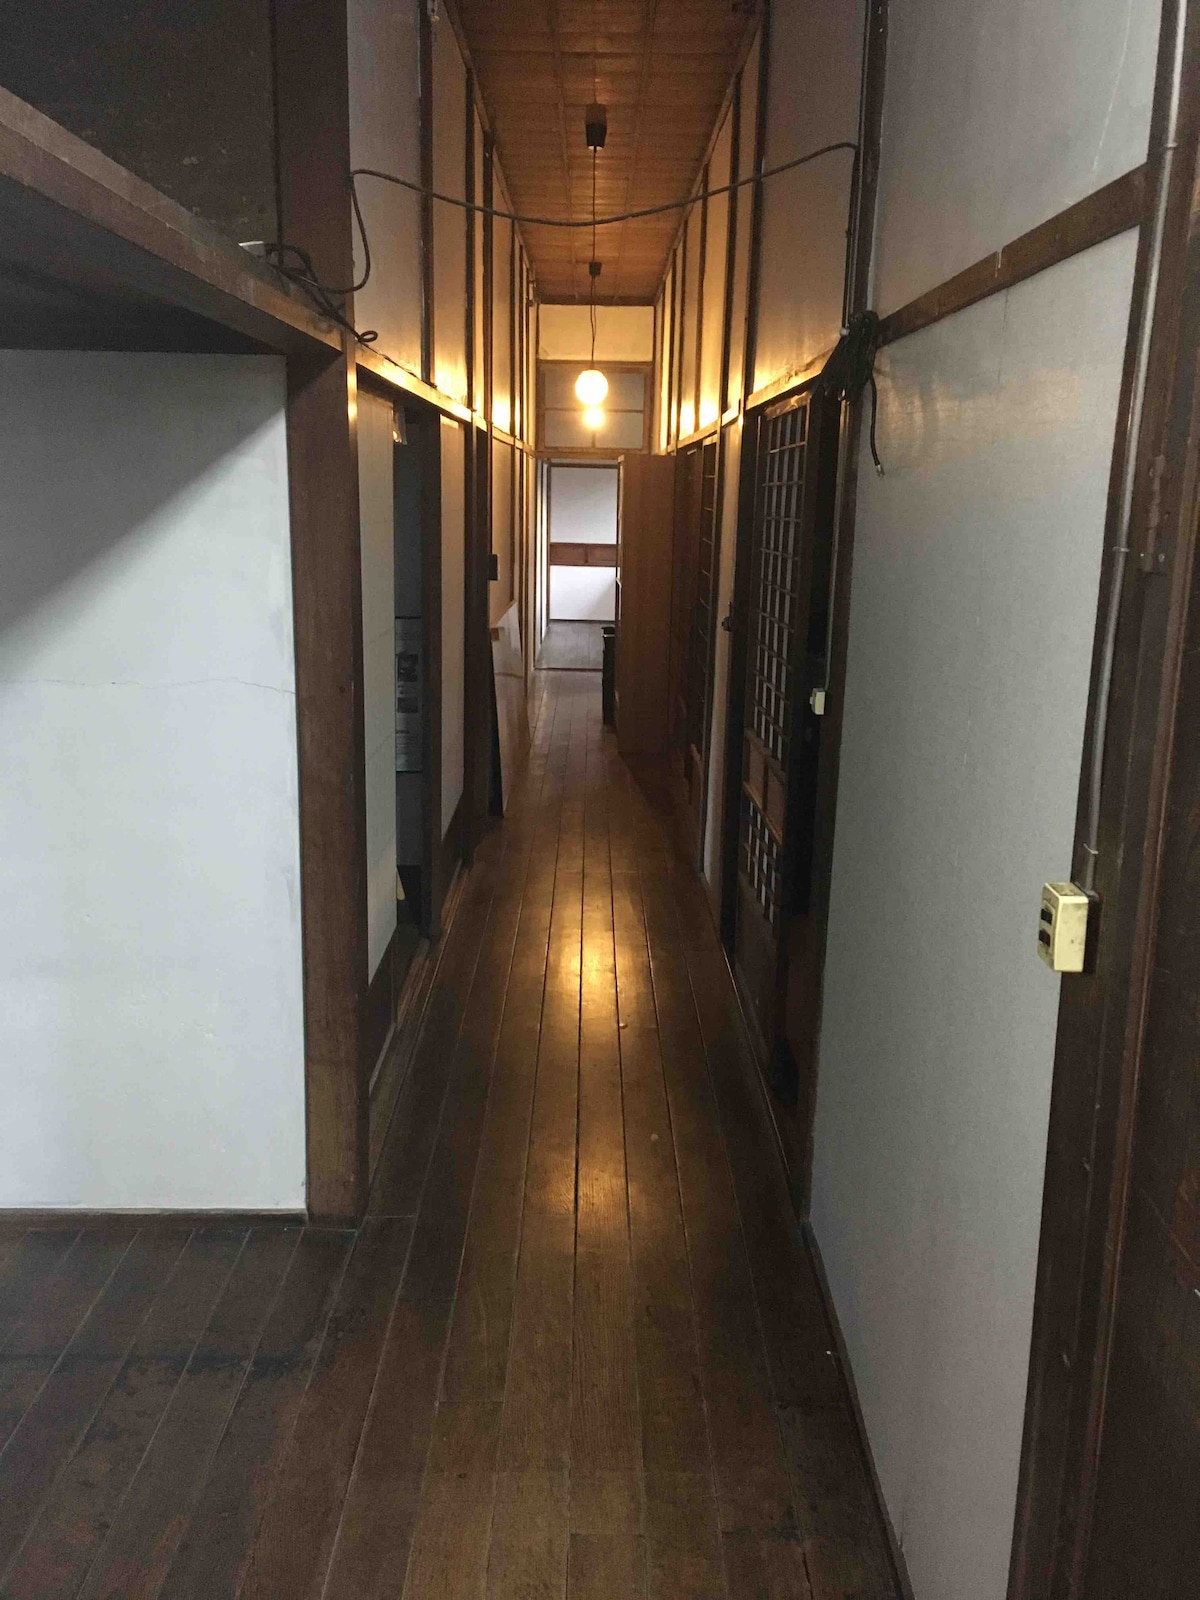 [日式客房， 6张榻榻米垫]一栋70年前在福岛县速町建造的老房子。通过各种交流了解该地区的生活。